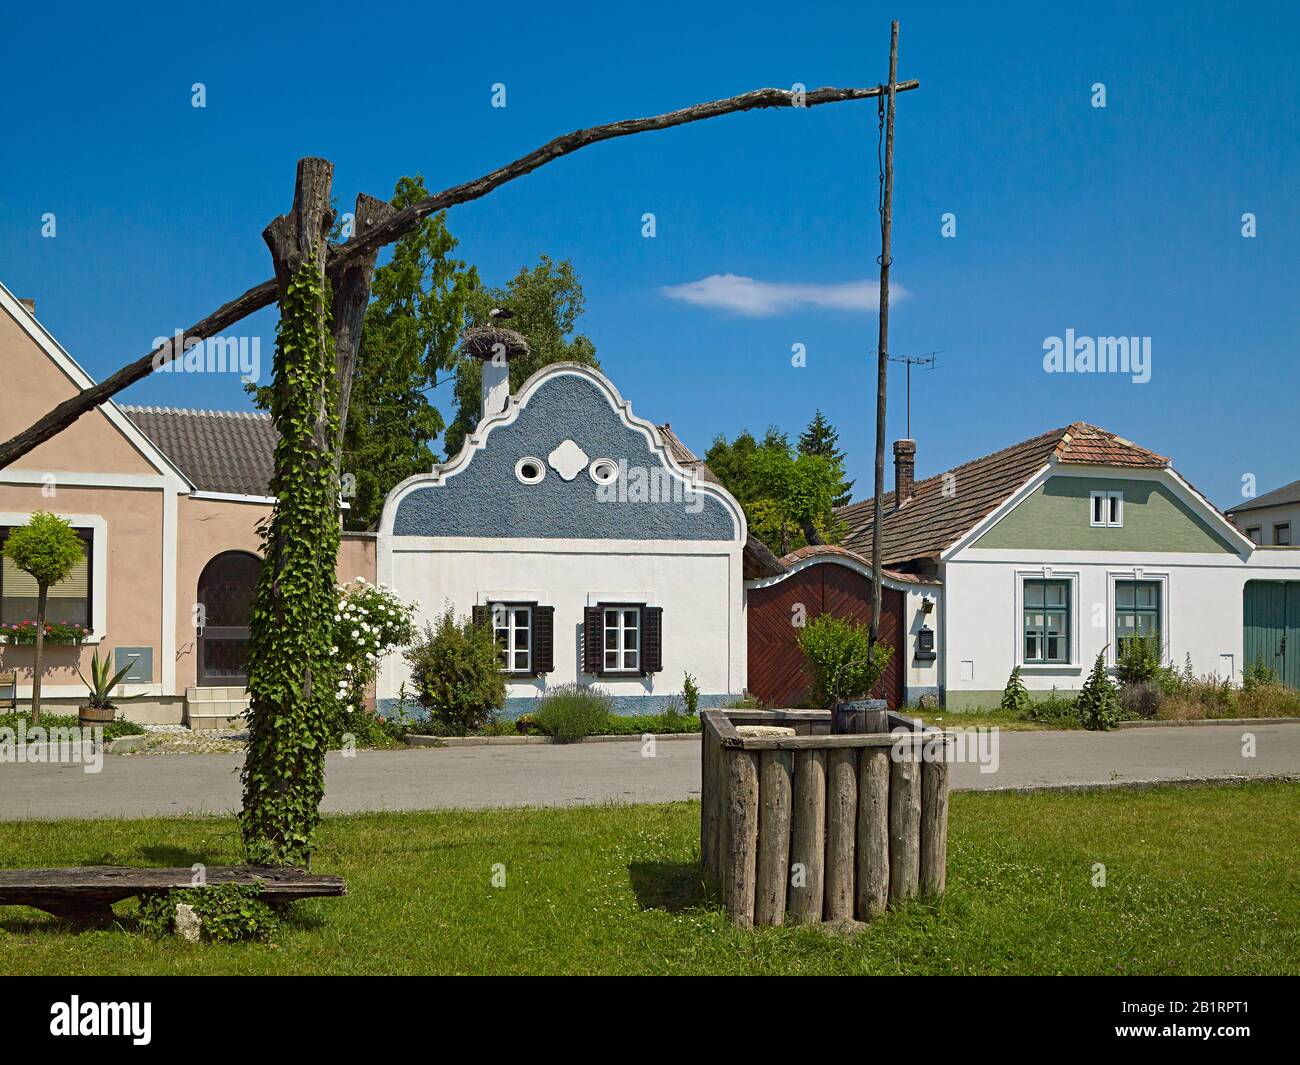 Hufnagelhaus, granja de Burgenland con frontón barroco y fuente de dibujo en Apetlon, Burgenland, Austria, Foto de stock